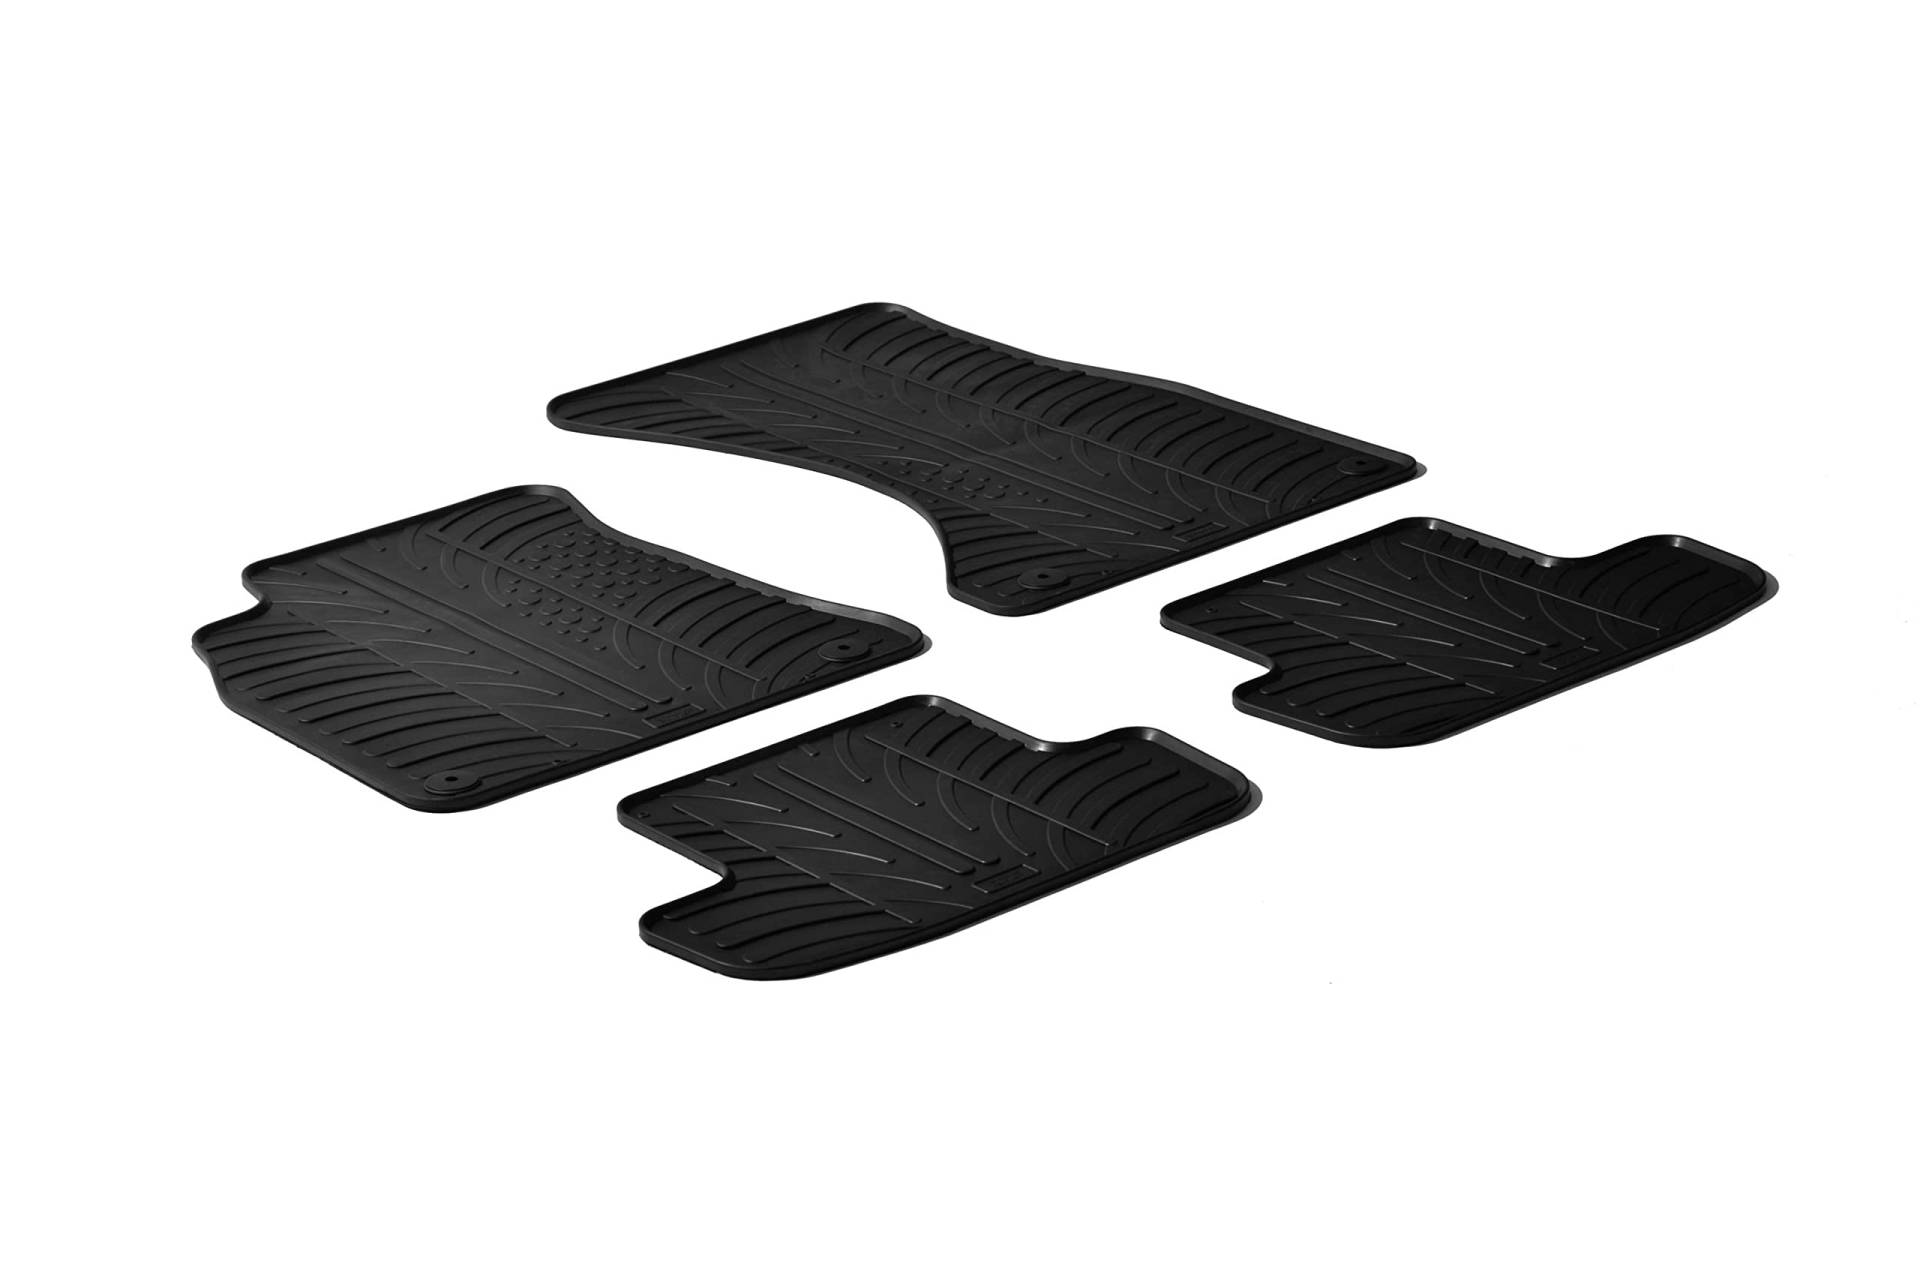 AROBA GL0240A5 Design Gummi Fußmatten kompatibel mit Audi A5 8T Sportback, S5 Sportback BJ. 09.2009-08.2016 erhöhter Rand 4 tlg Farbe Schwarz Gummimatten Automatten passgenau von AROBA